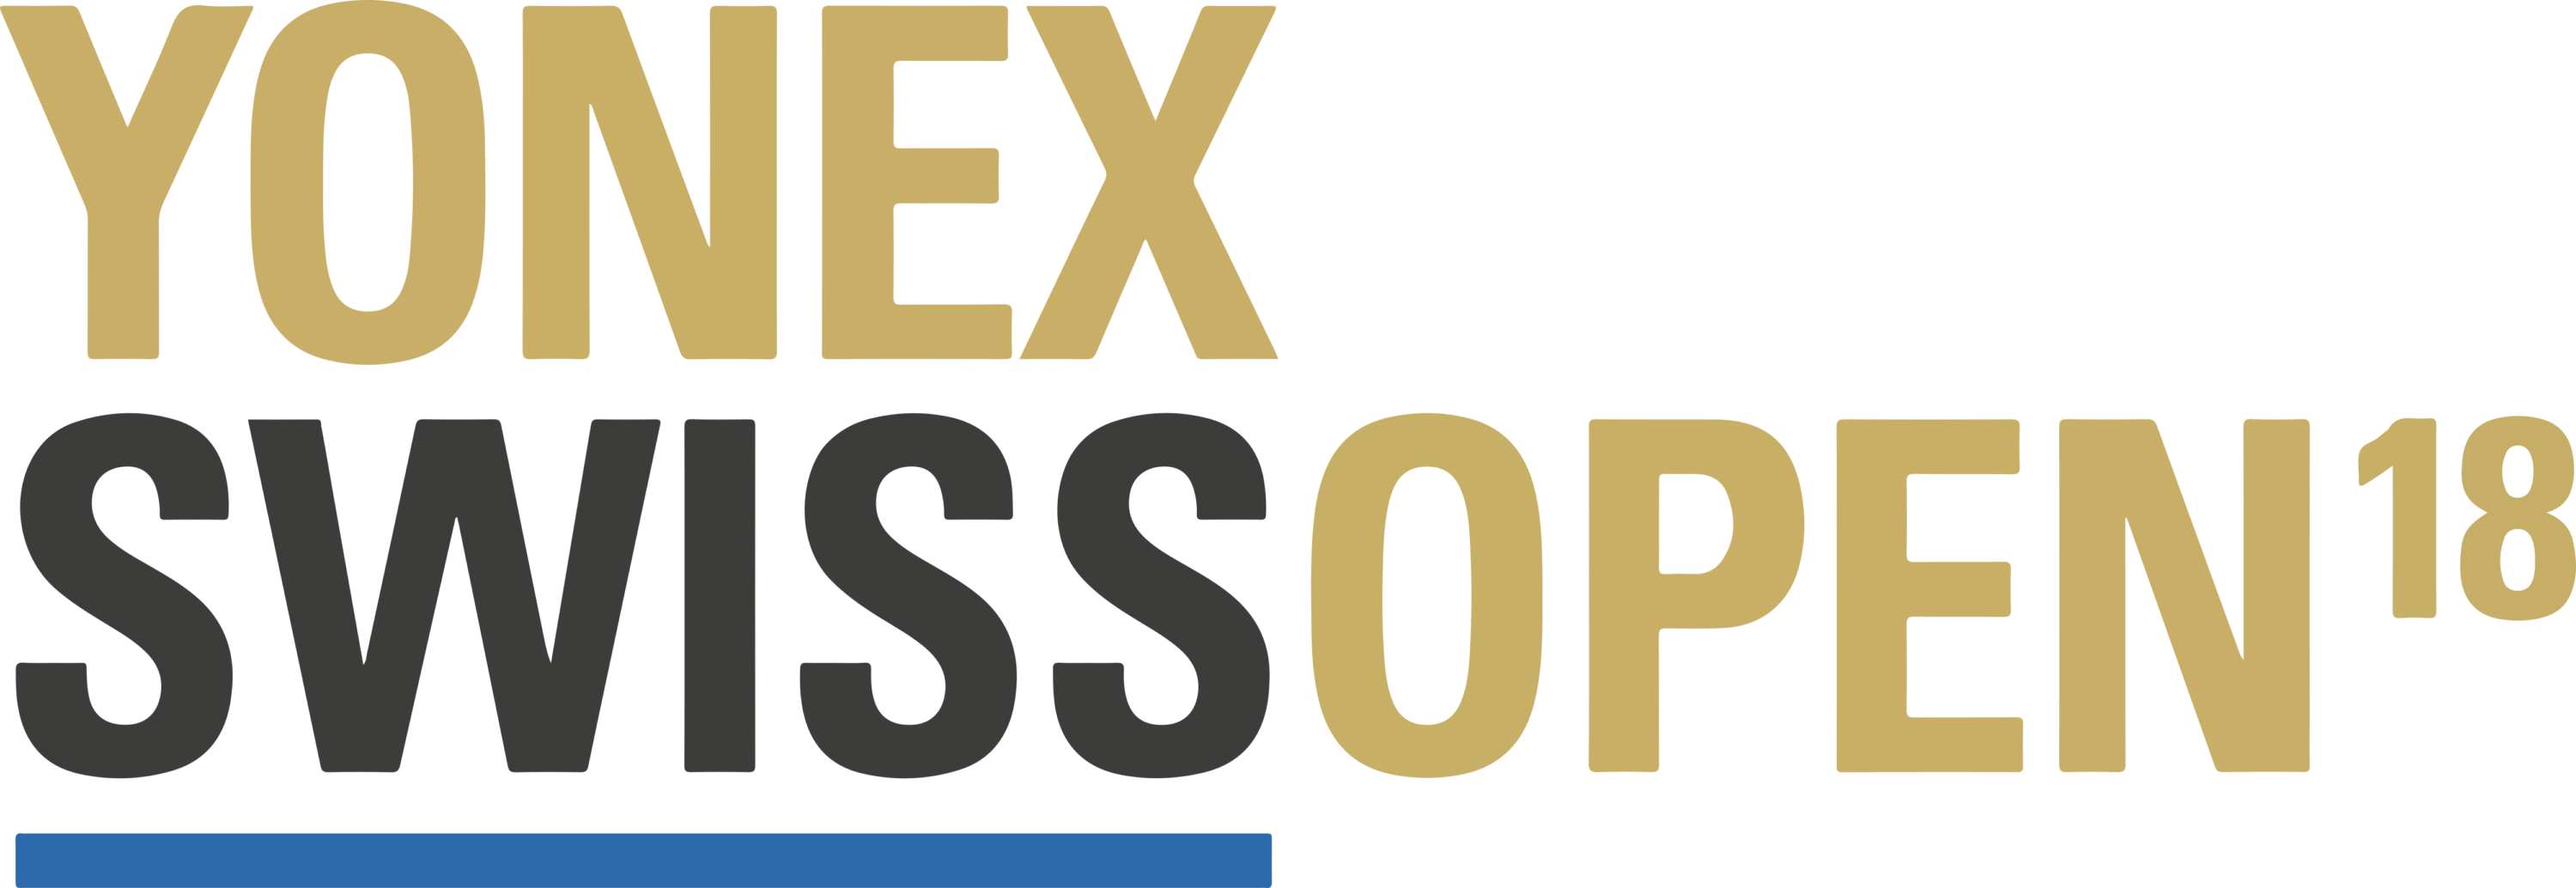 2018 Yonex Swiss Open Logo